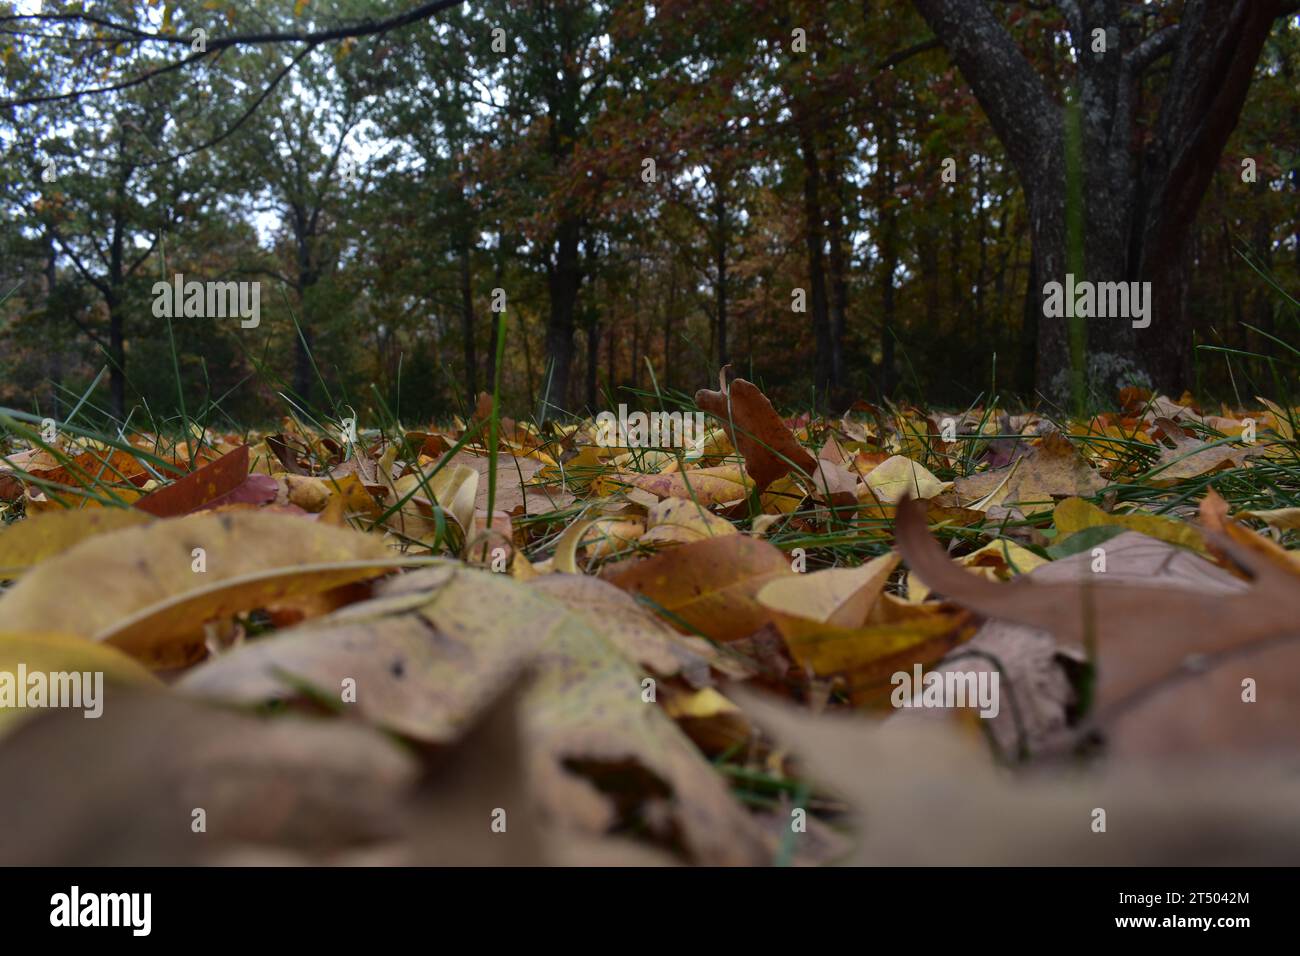 Ein Teppich aus herabfallenden Herbstblättern bedeckt das grüne Gras in dieser flachen Ansicht. Ein Hintergrund von verschwommenen Bäumen in Herbstfarben säumen den Hof. Stockfoto